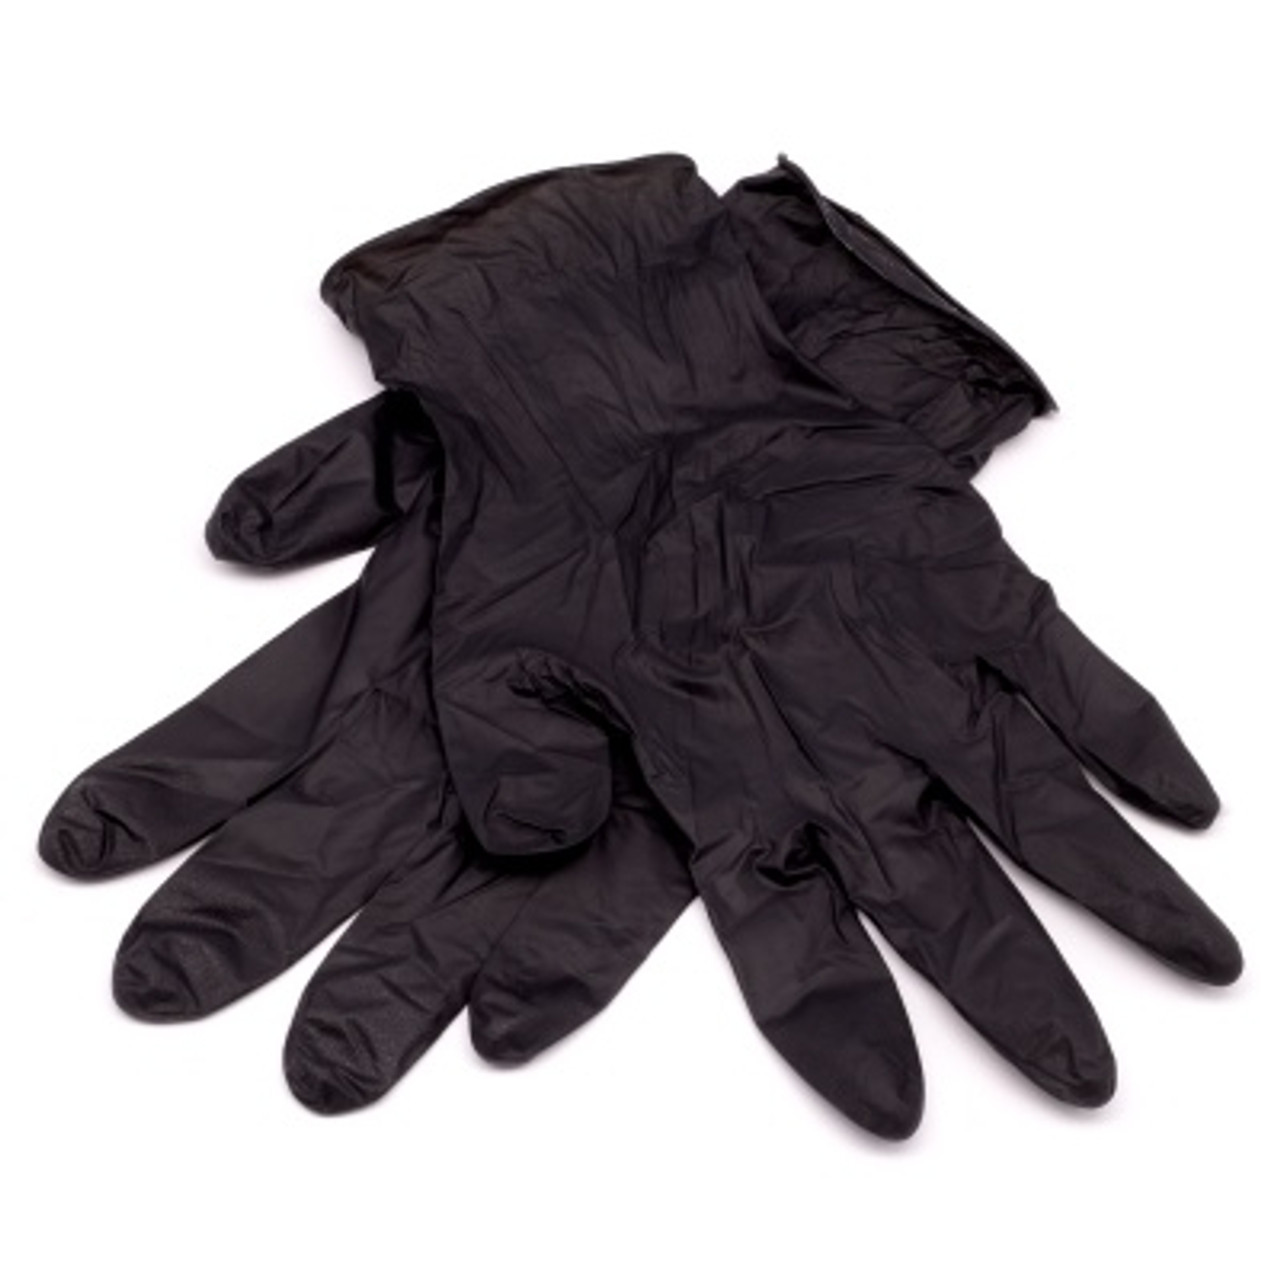 Guantes texturas negro Mia Black by Kessler - Tienda online de guantes